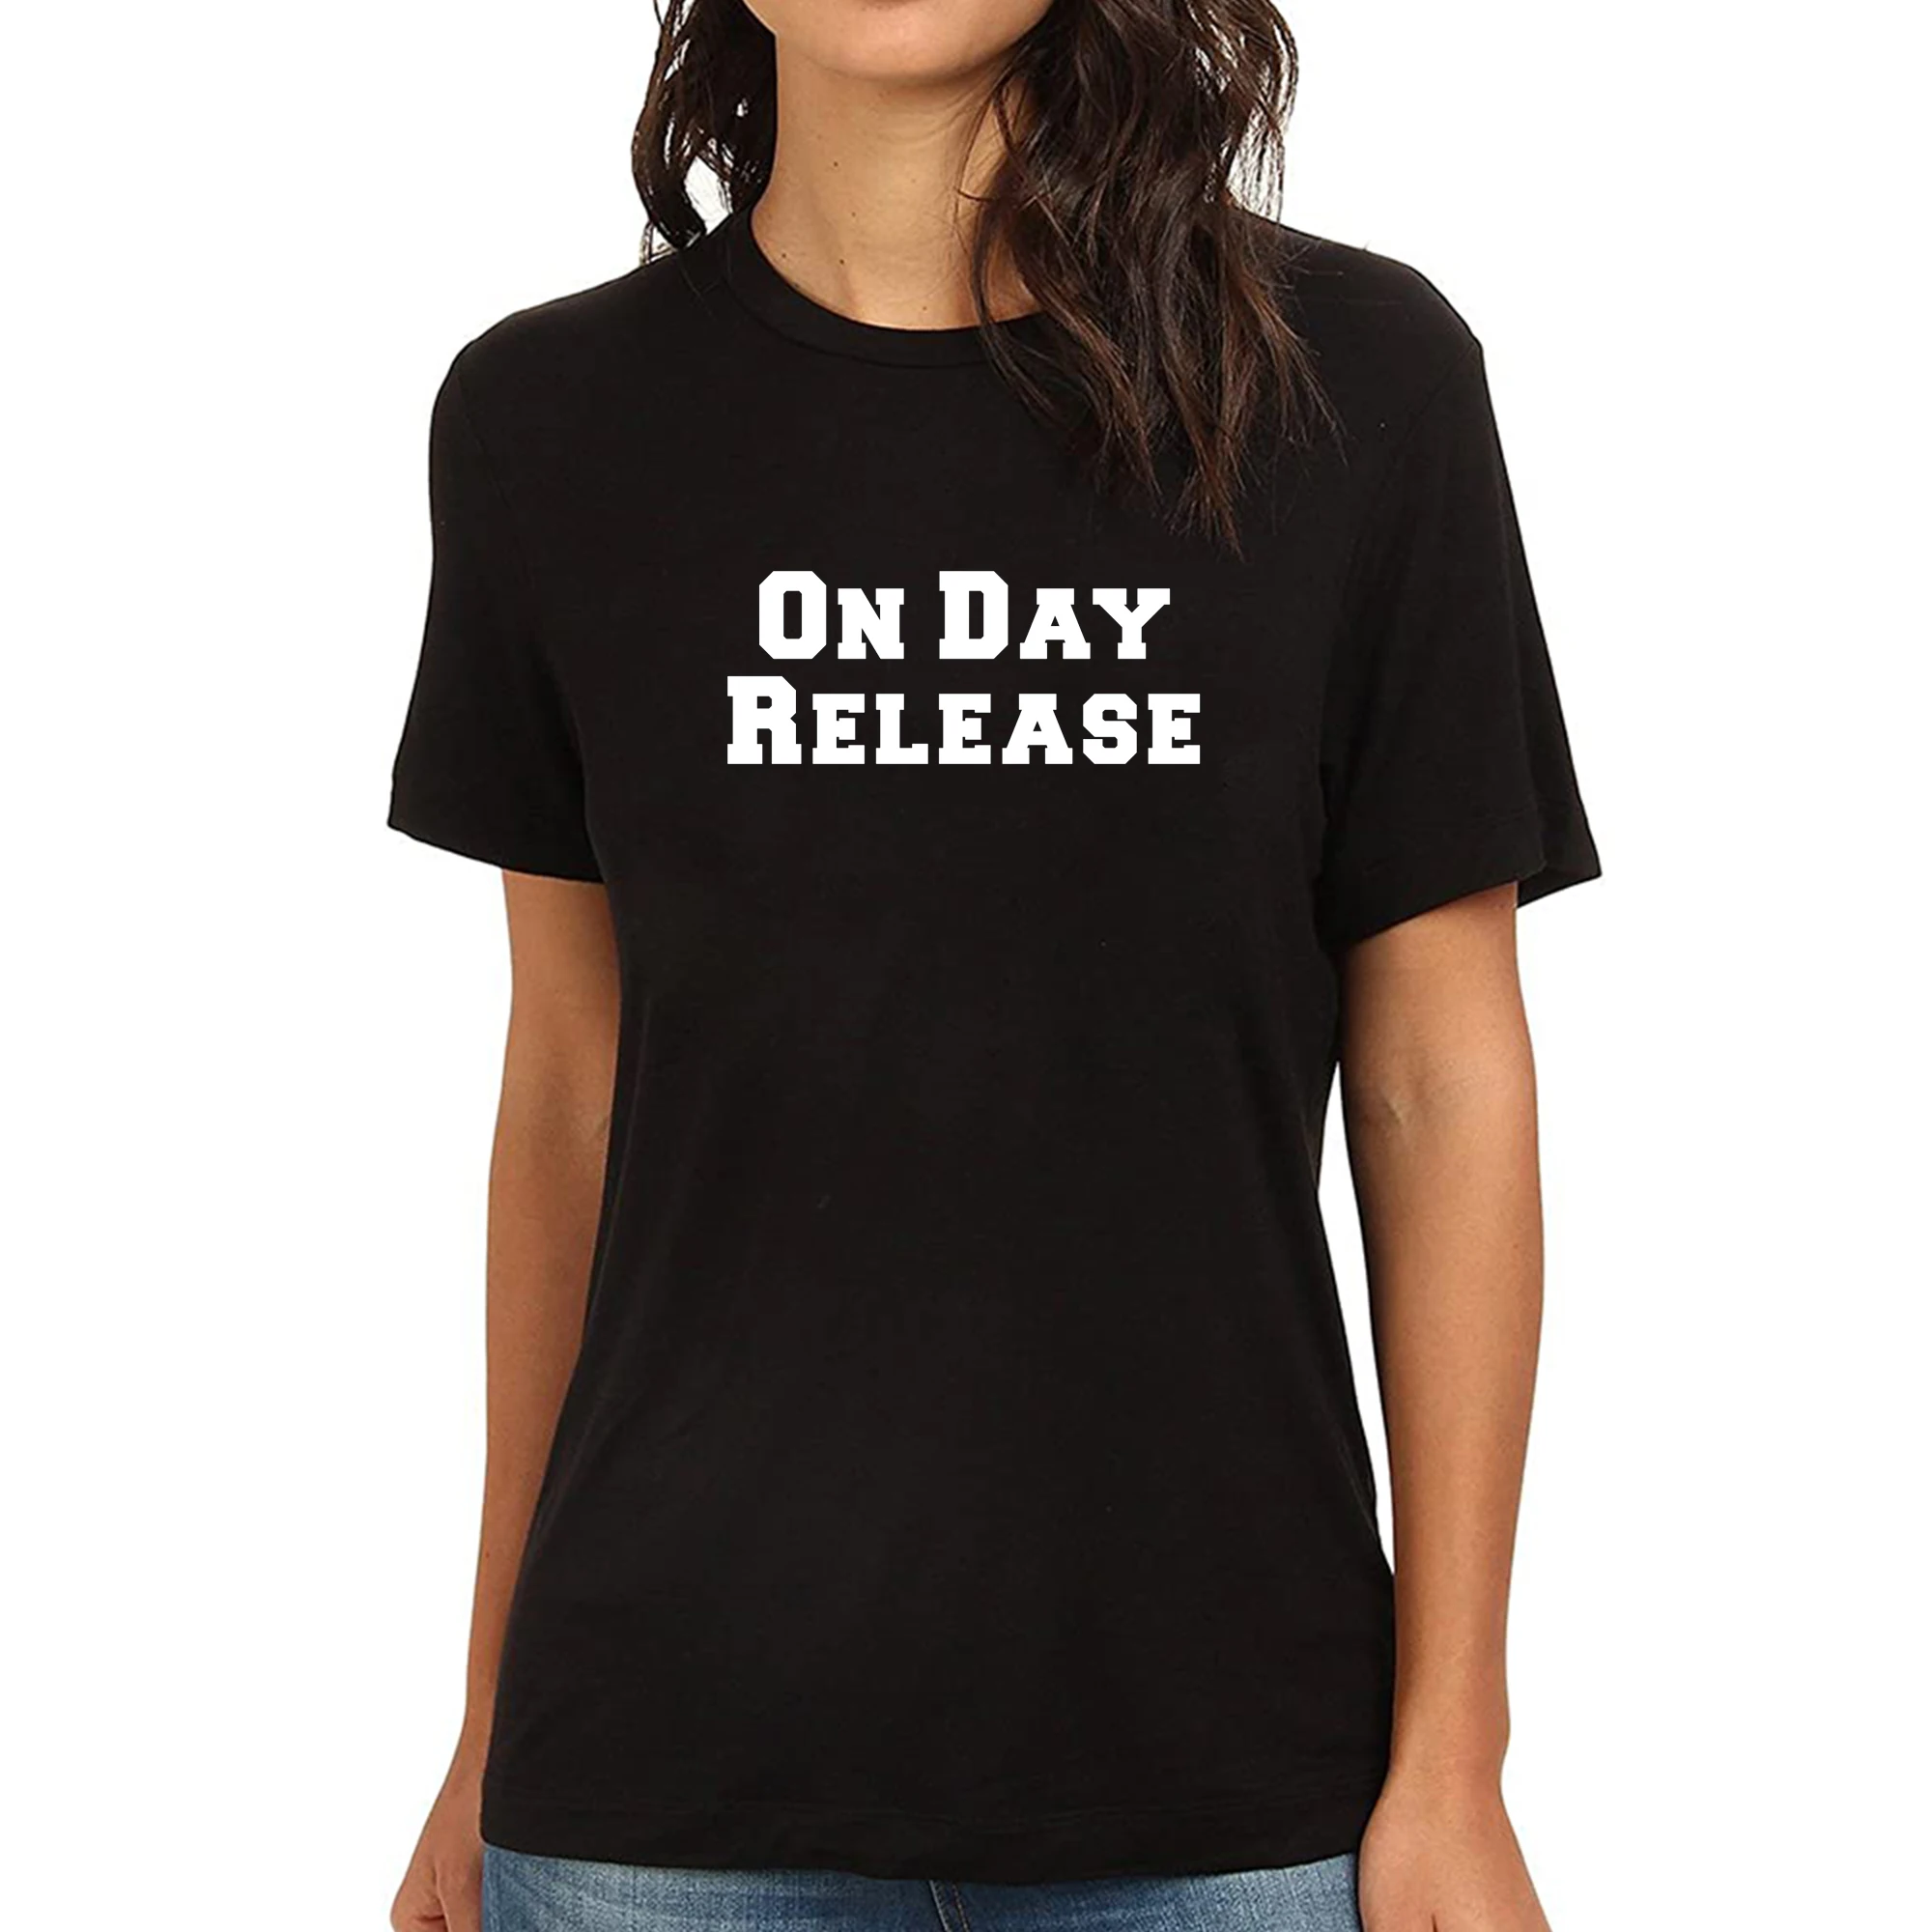 Lyprerazy женская футболка с забавным принтом на День выпуска | Женская одежда